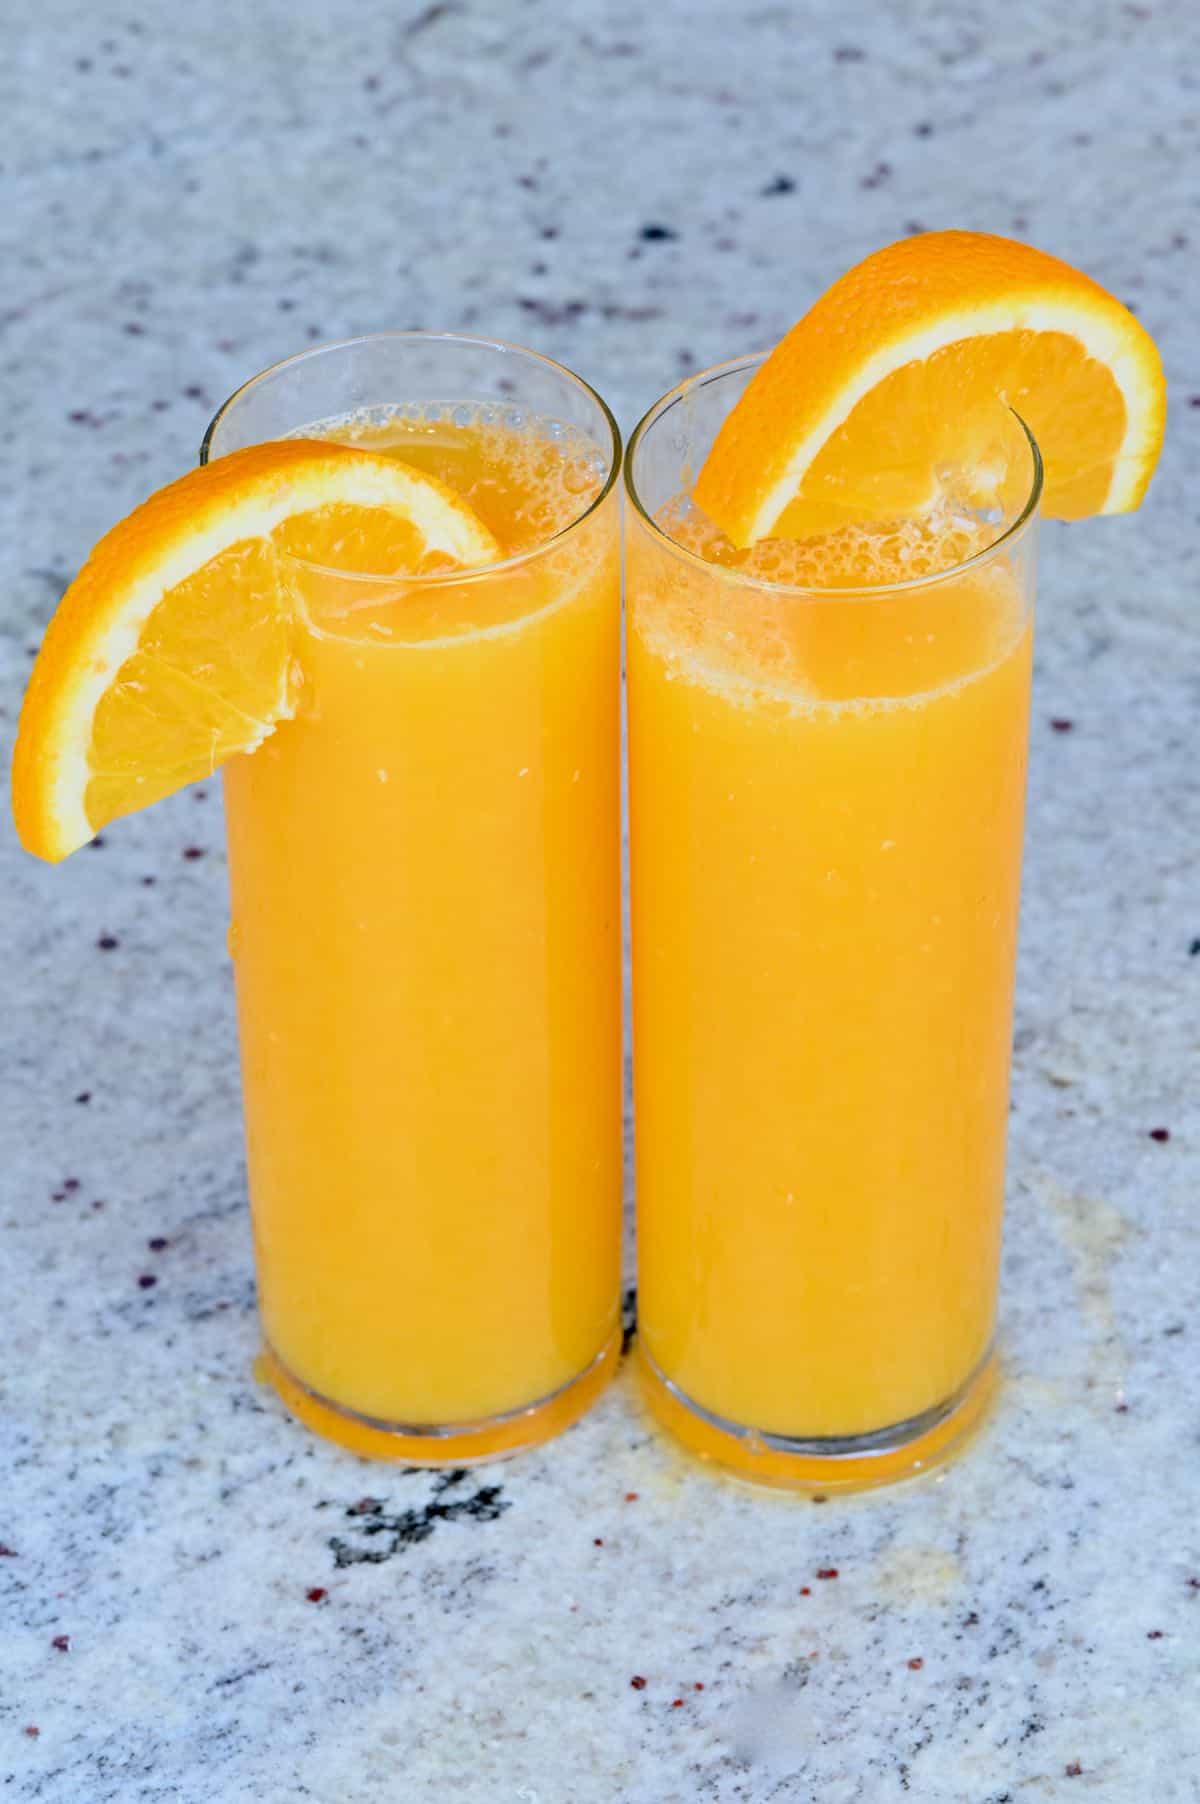 https://www.alphafoodie.com/wp-content/uploads/2020/11/Orange-Juice-2-of-2.jpeg